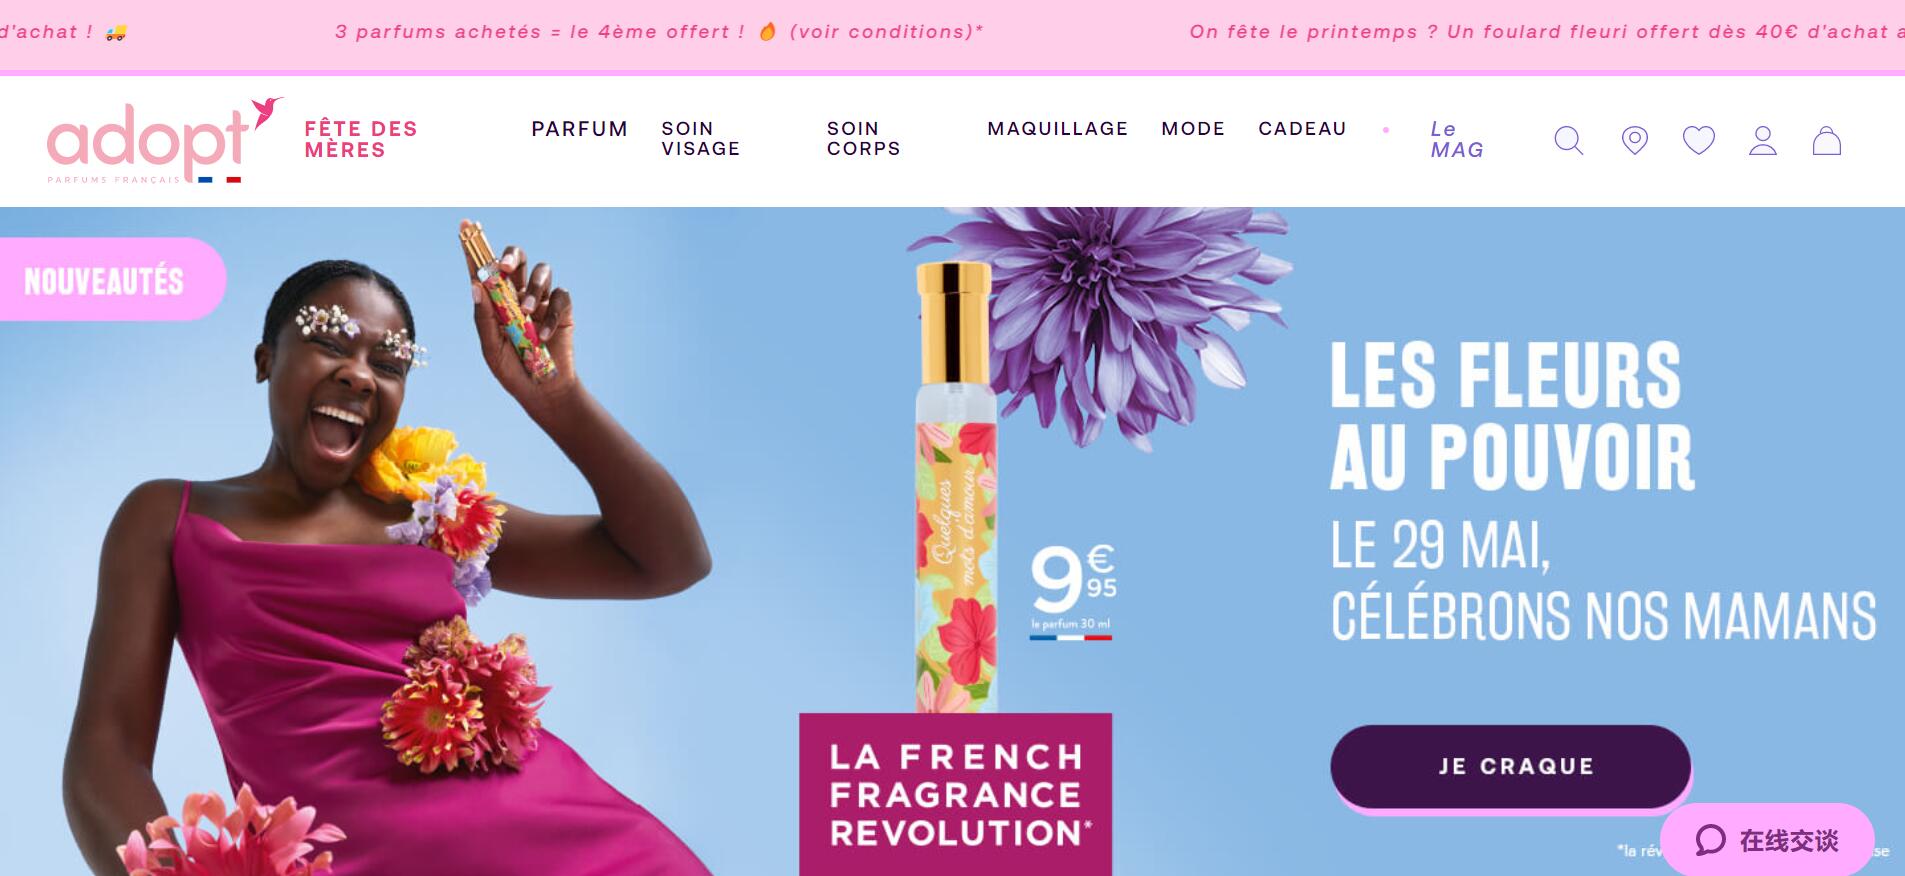 法国平价香氛品牌 Adopt Parfums 完成2620万欧元B轮融资